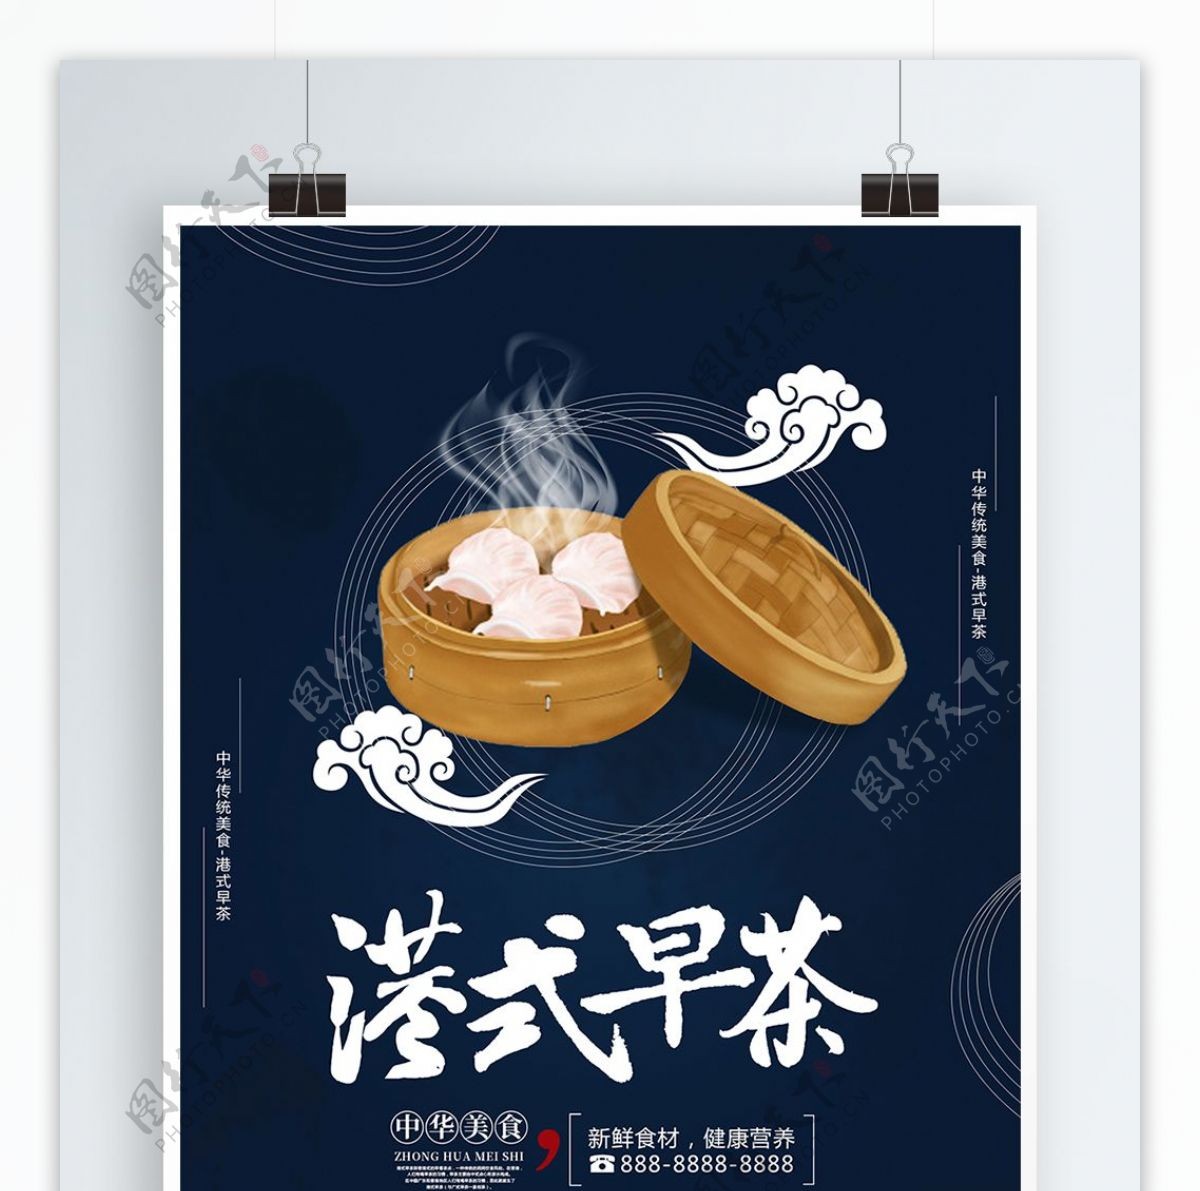 原创蓝色手绘中国风港式早茶宣传海报